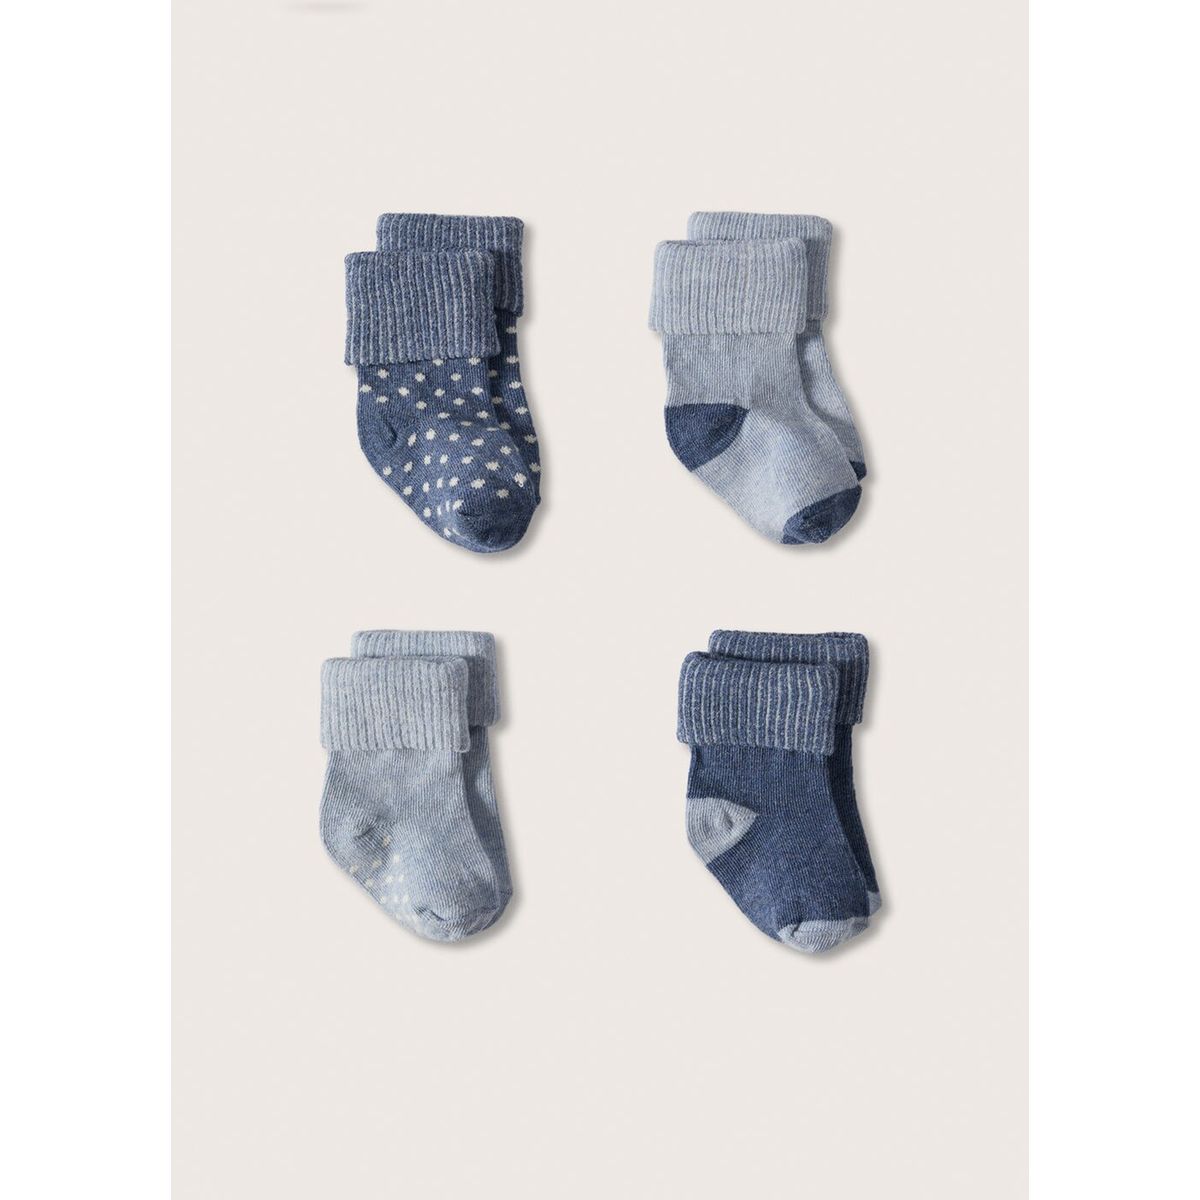 Chaussettes bébé 0-1 mois Vêtements Vêtements enfant unisexe Chaussettes et jambières Chaussettes 